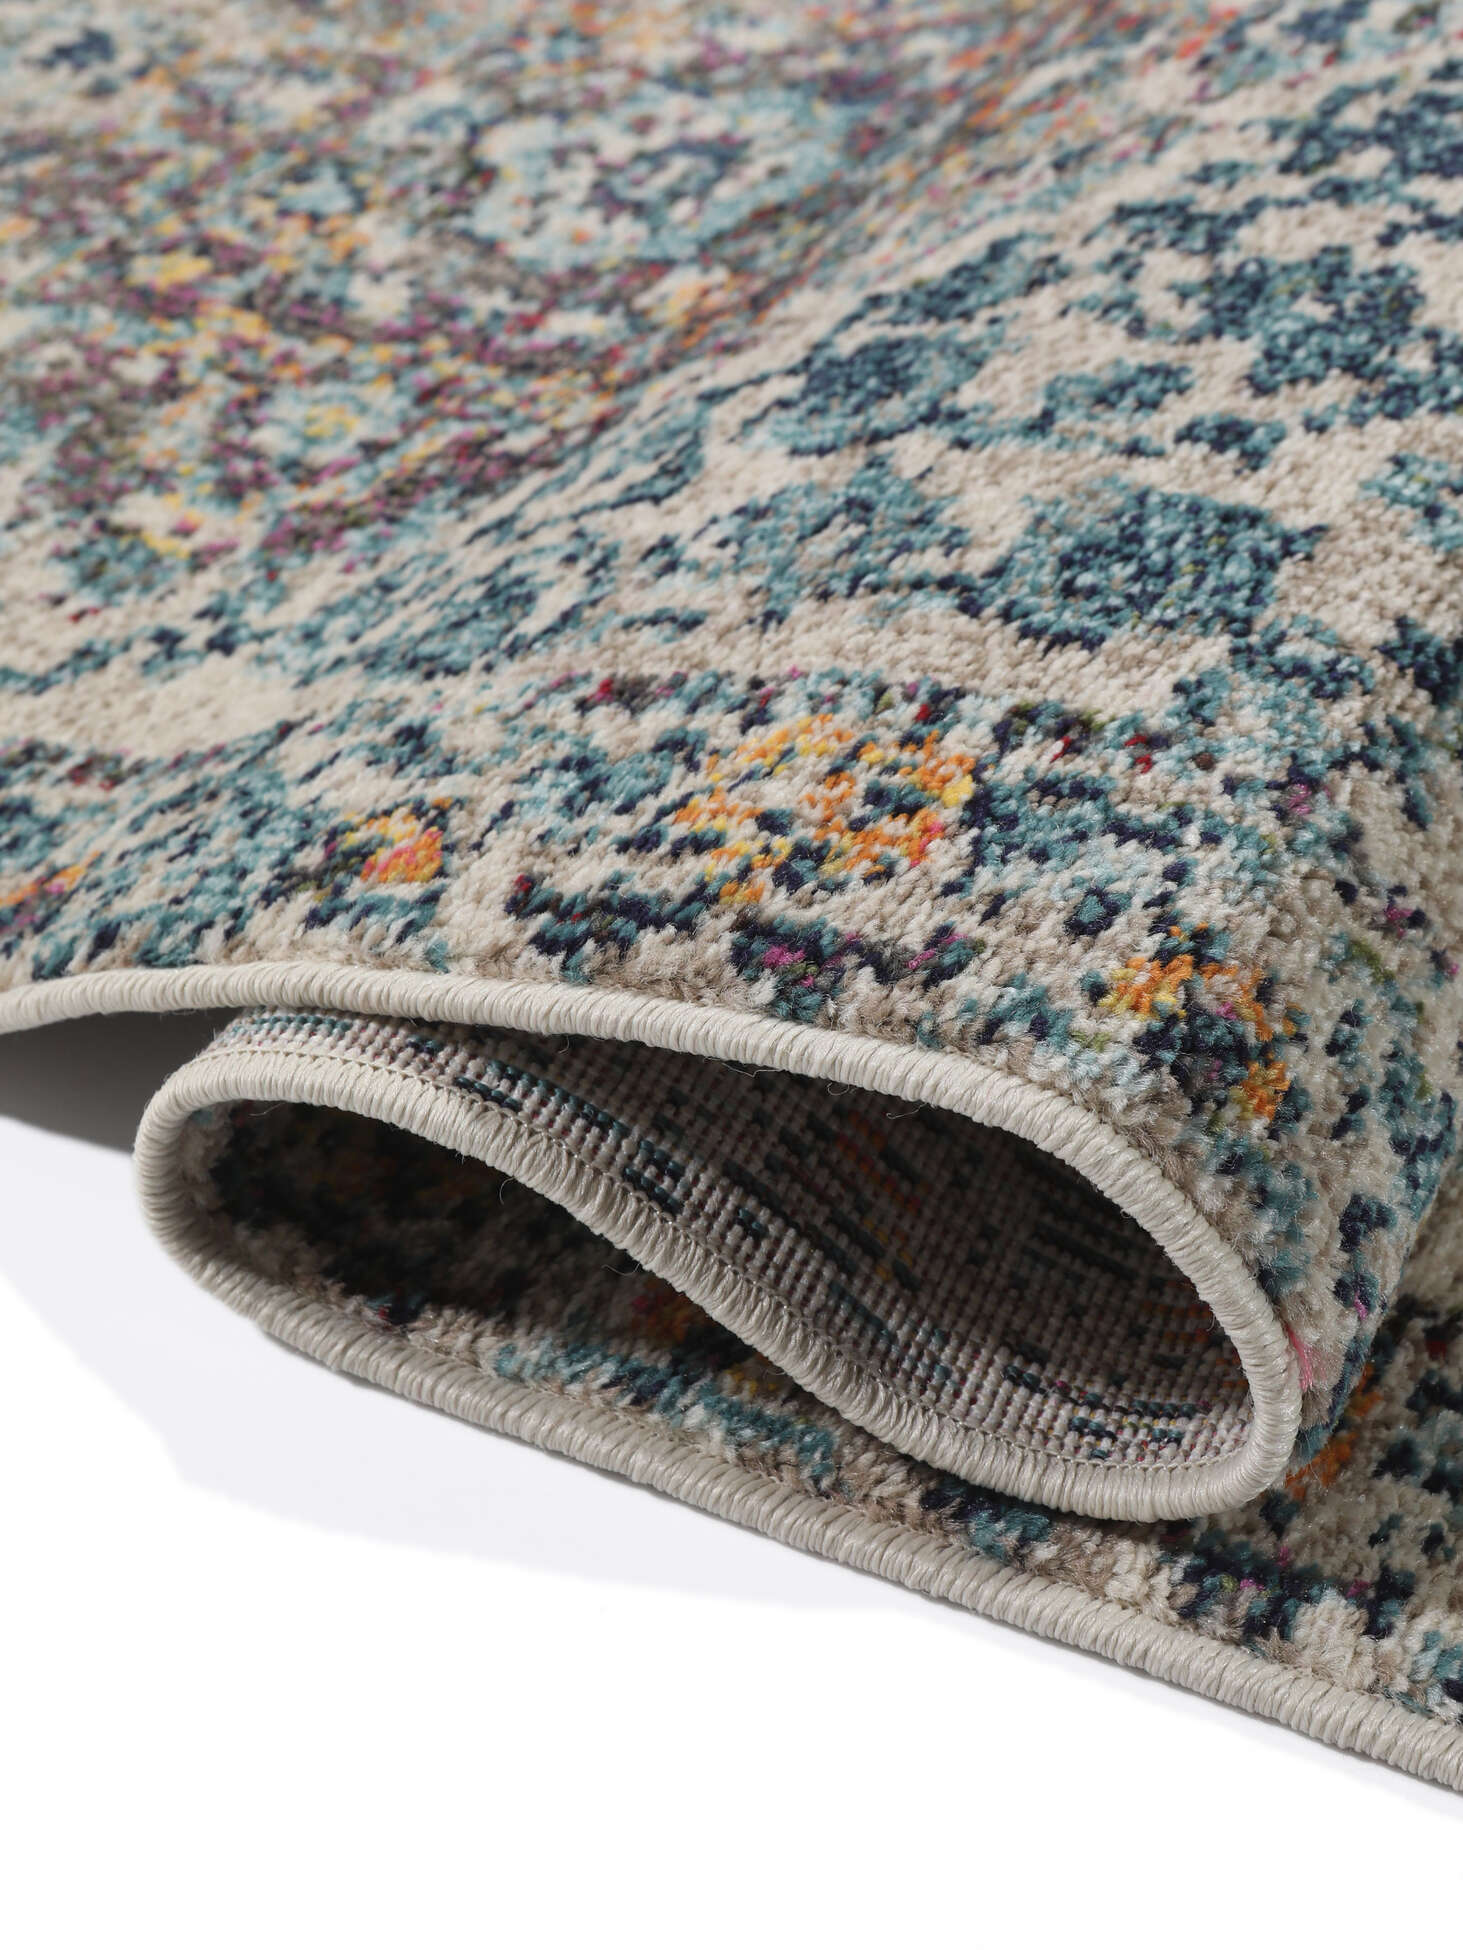 Tapis 400 x 300 cm: achetez un joli tapis sur Trendcarpet